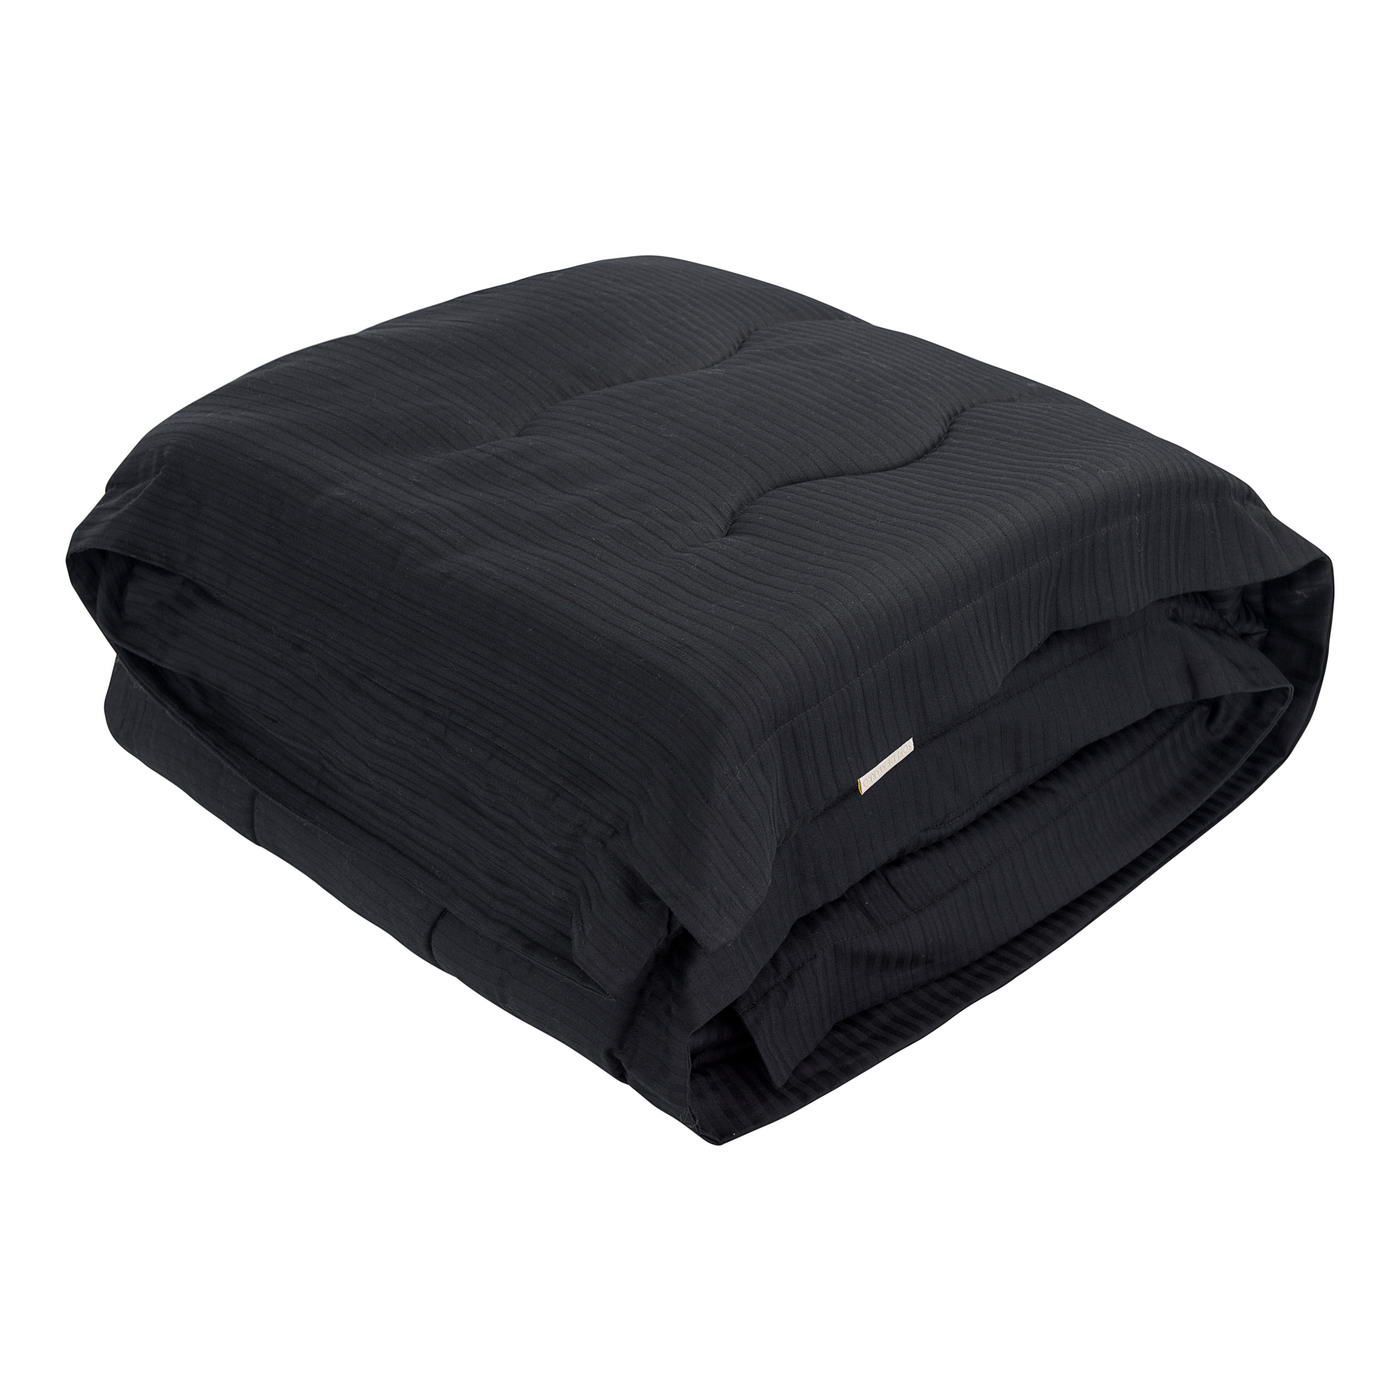 Одеяло-покрывало Тиффани цвет: черный (195х220 см), размер 195х220 см sofi973243 Одеяло-покрывало Тиффани цвет: черный (195х220 см) - фото 1